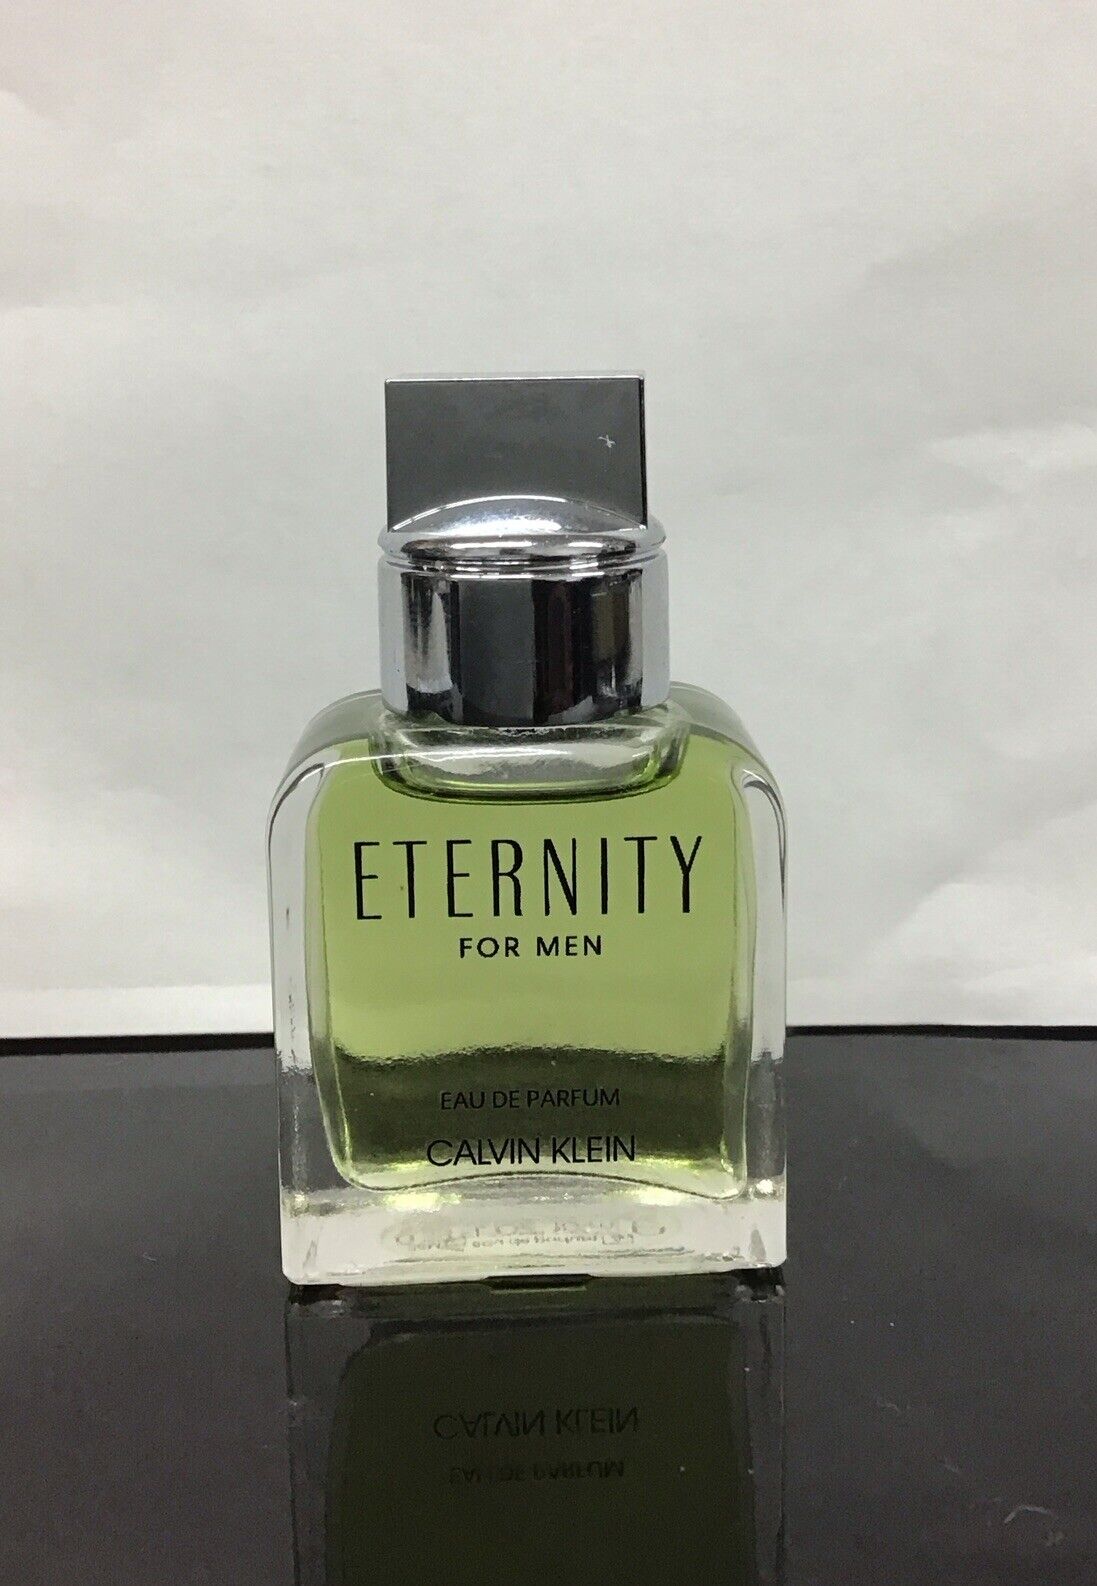 Calvin Klein Eternity For Men Eau De Parfum Splash 0.33 Oz, As Pictured. No Box